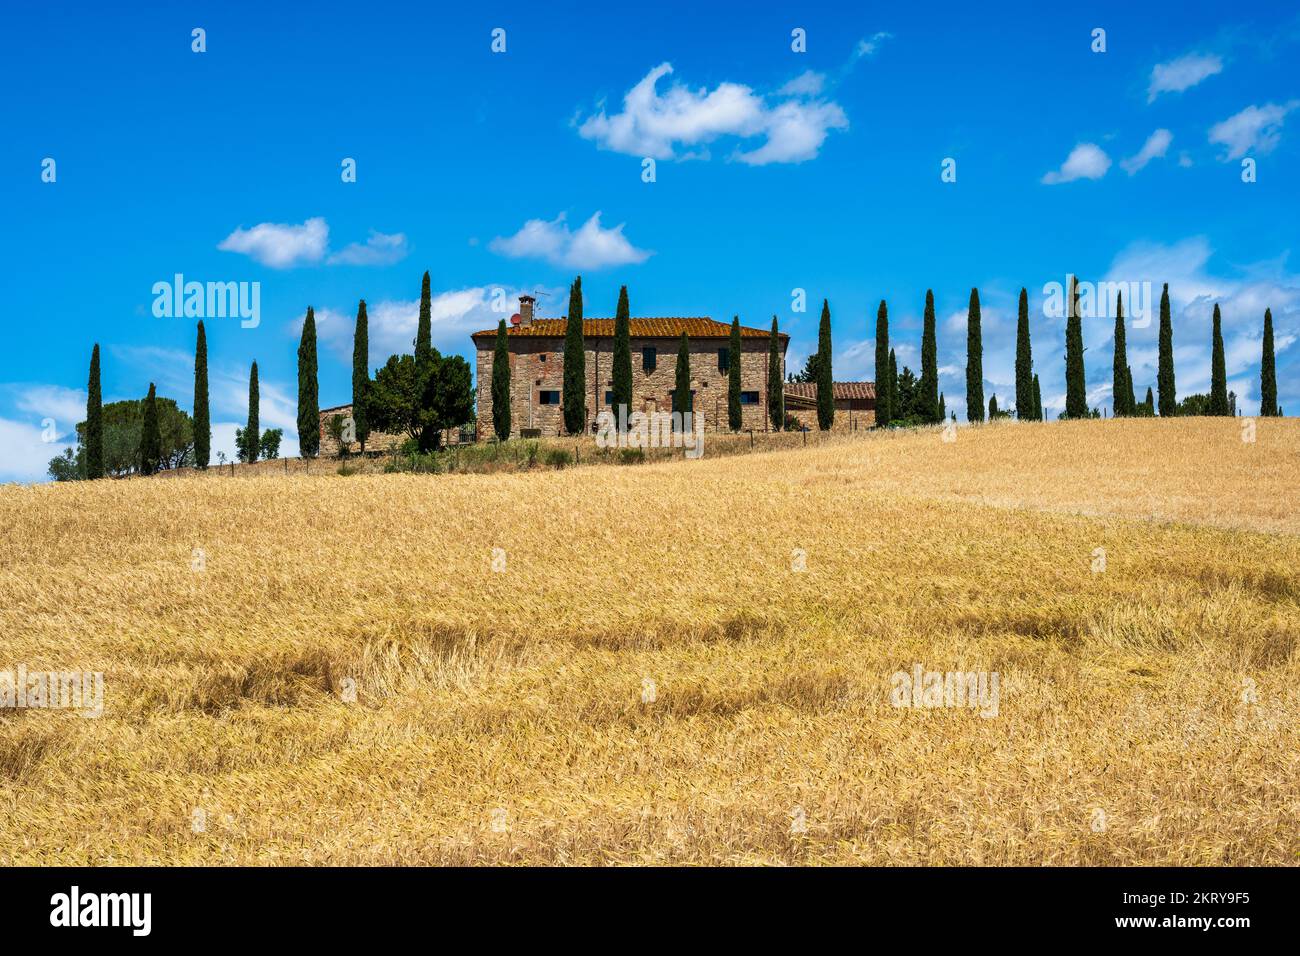 Casa colonica in pietra toscana con cipressi nelle Crete Senesi vicino alla città di Asciano, in provincia di Siena, Toscana, Italia Foto Stock